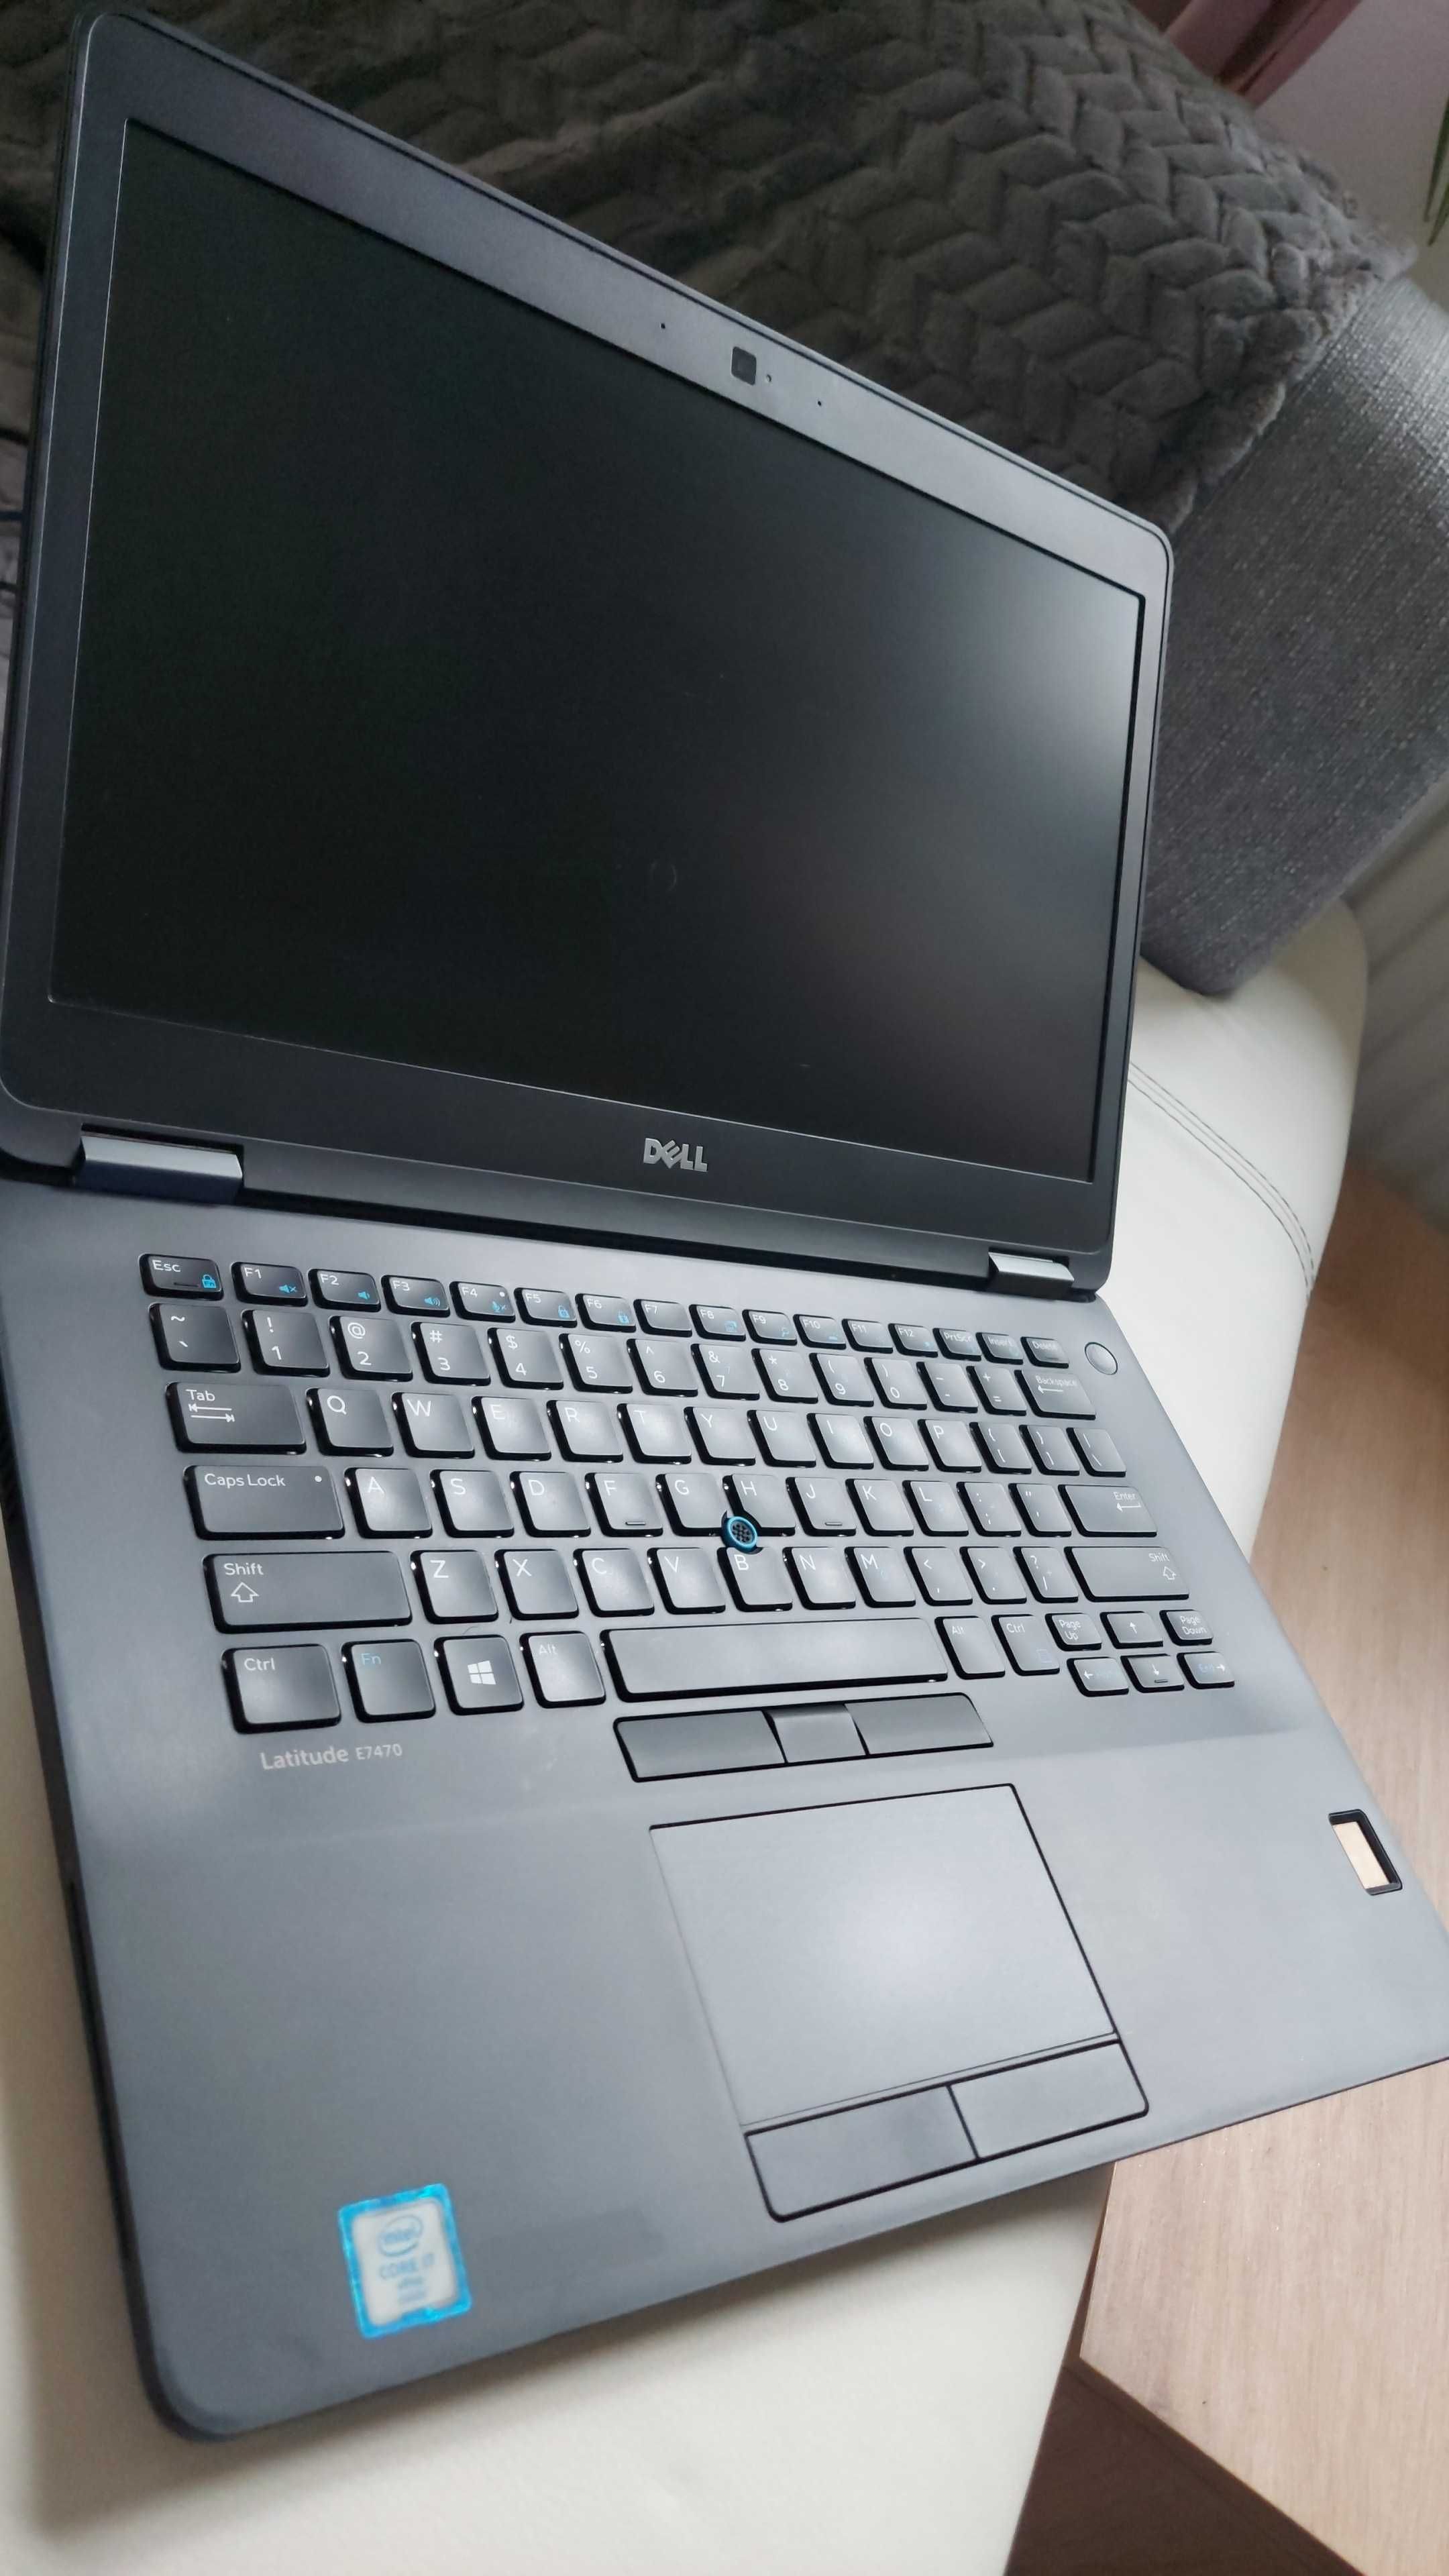 Laptop notebook DELL E7470, 256Gb SSD, 8Gb RAM, HD520, i5-6300U